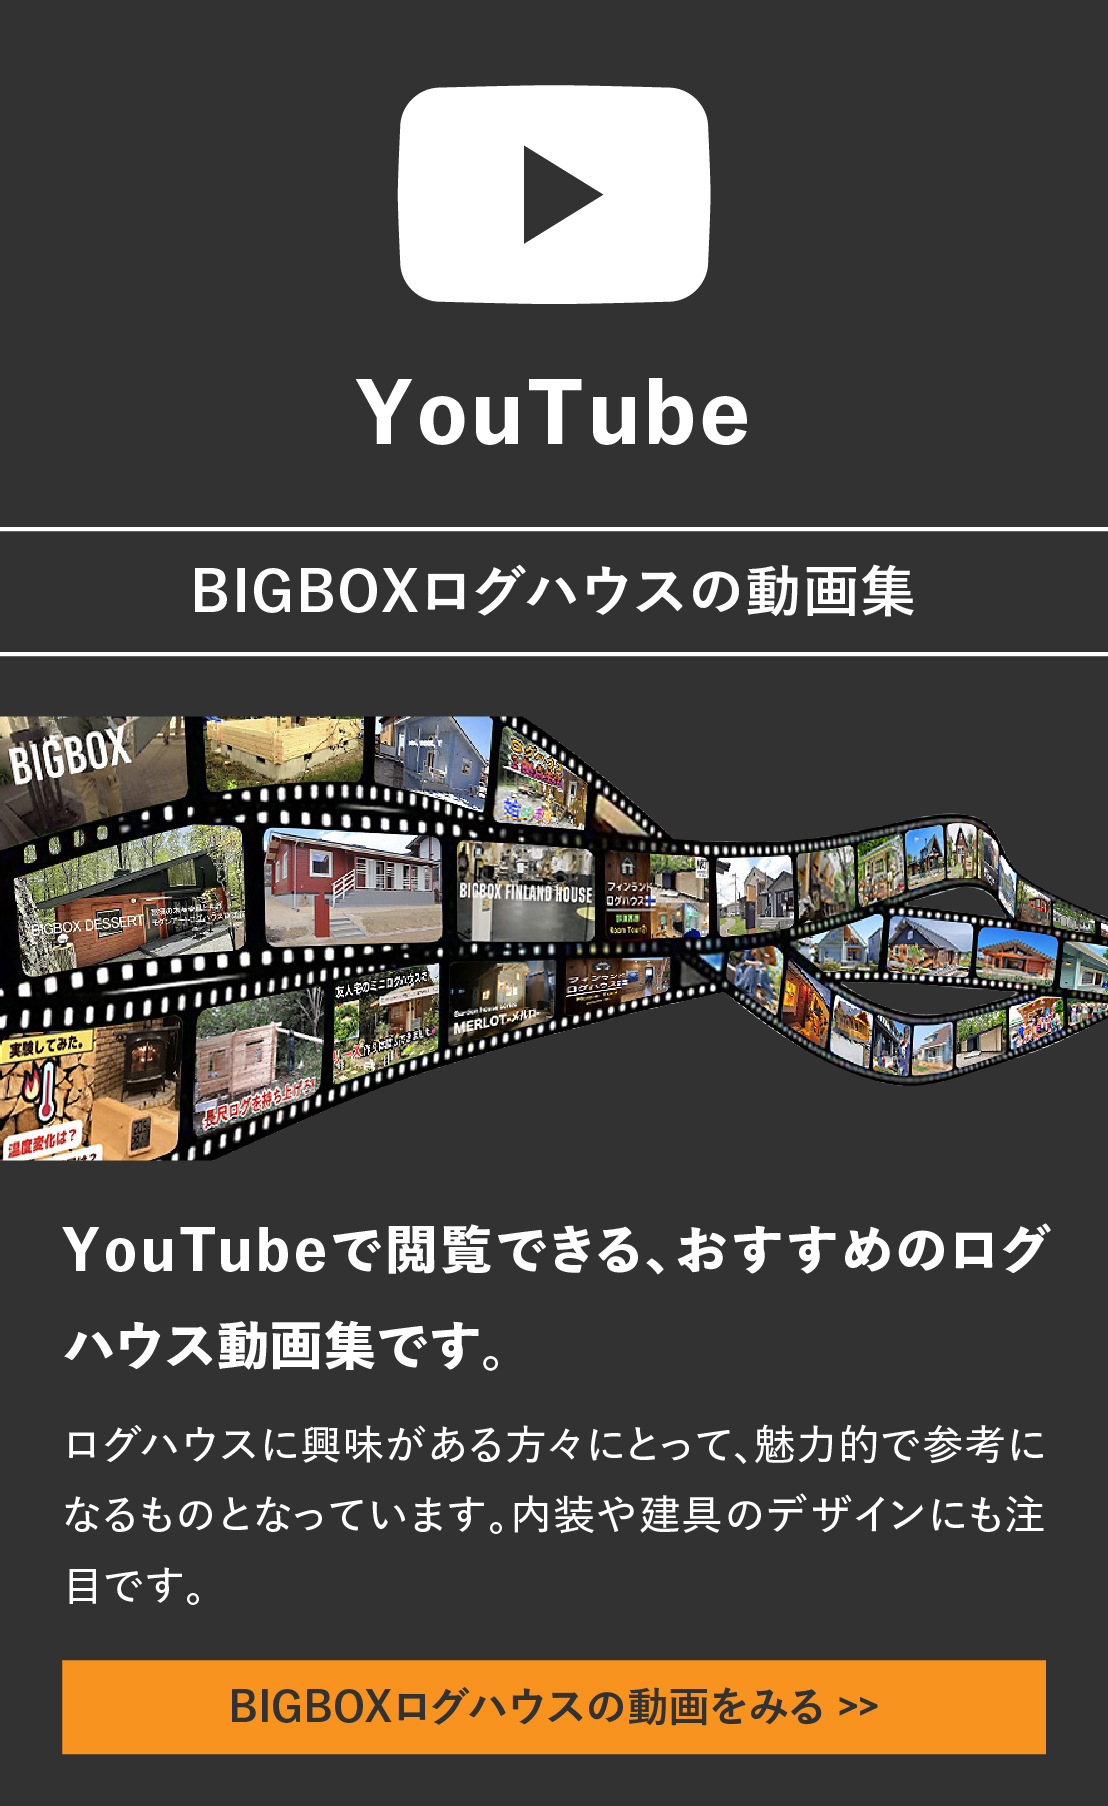 ログハウスのビックボックス,BIGBOX DESSERT,実績紹介,Youtube